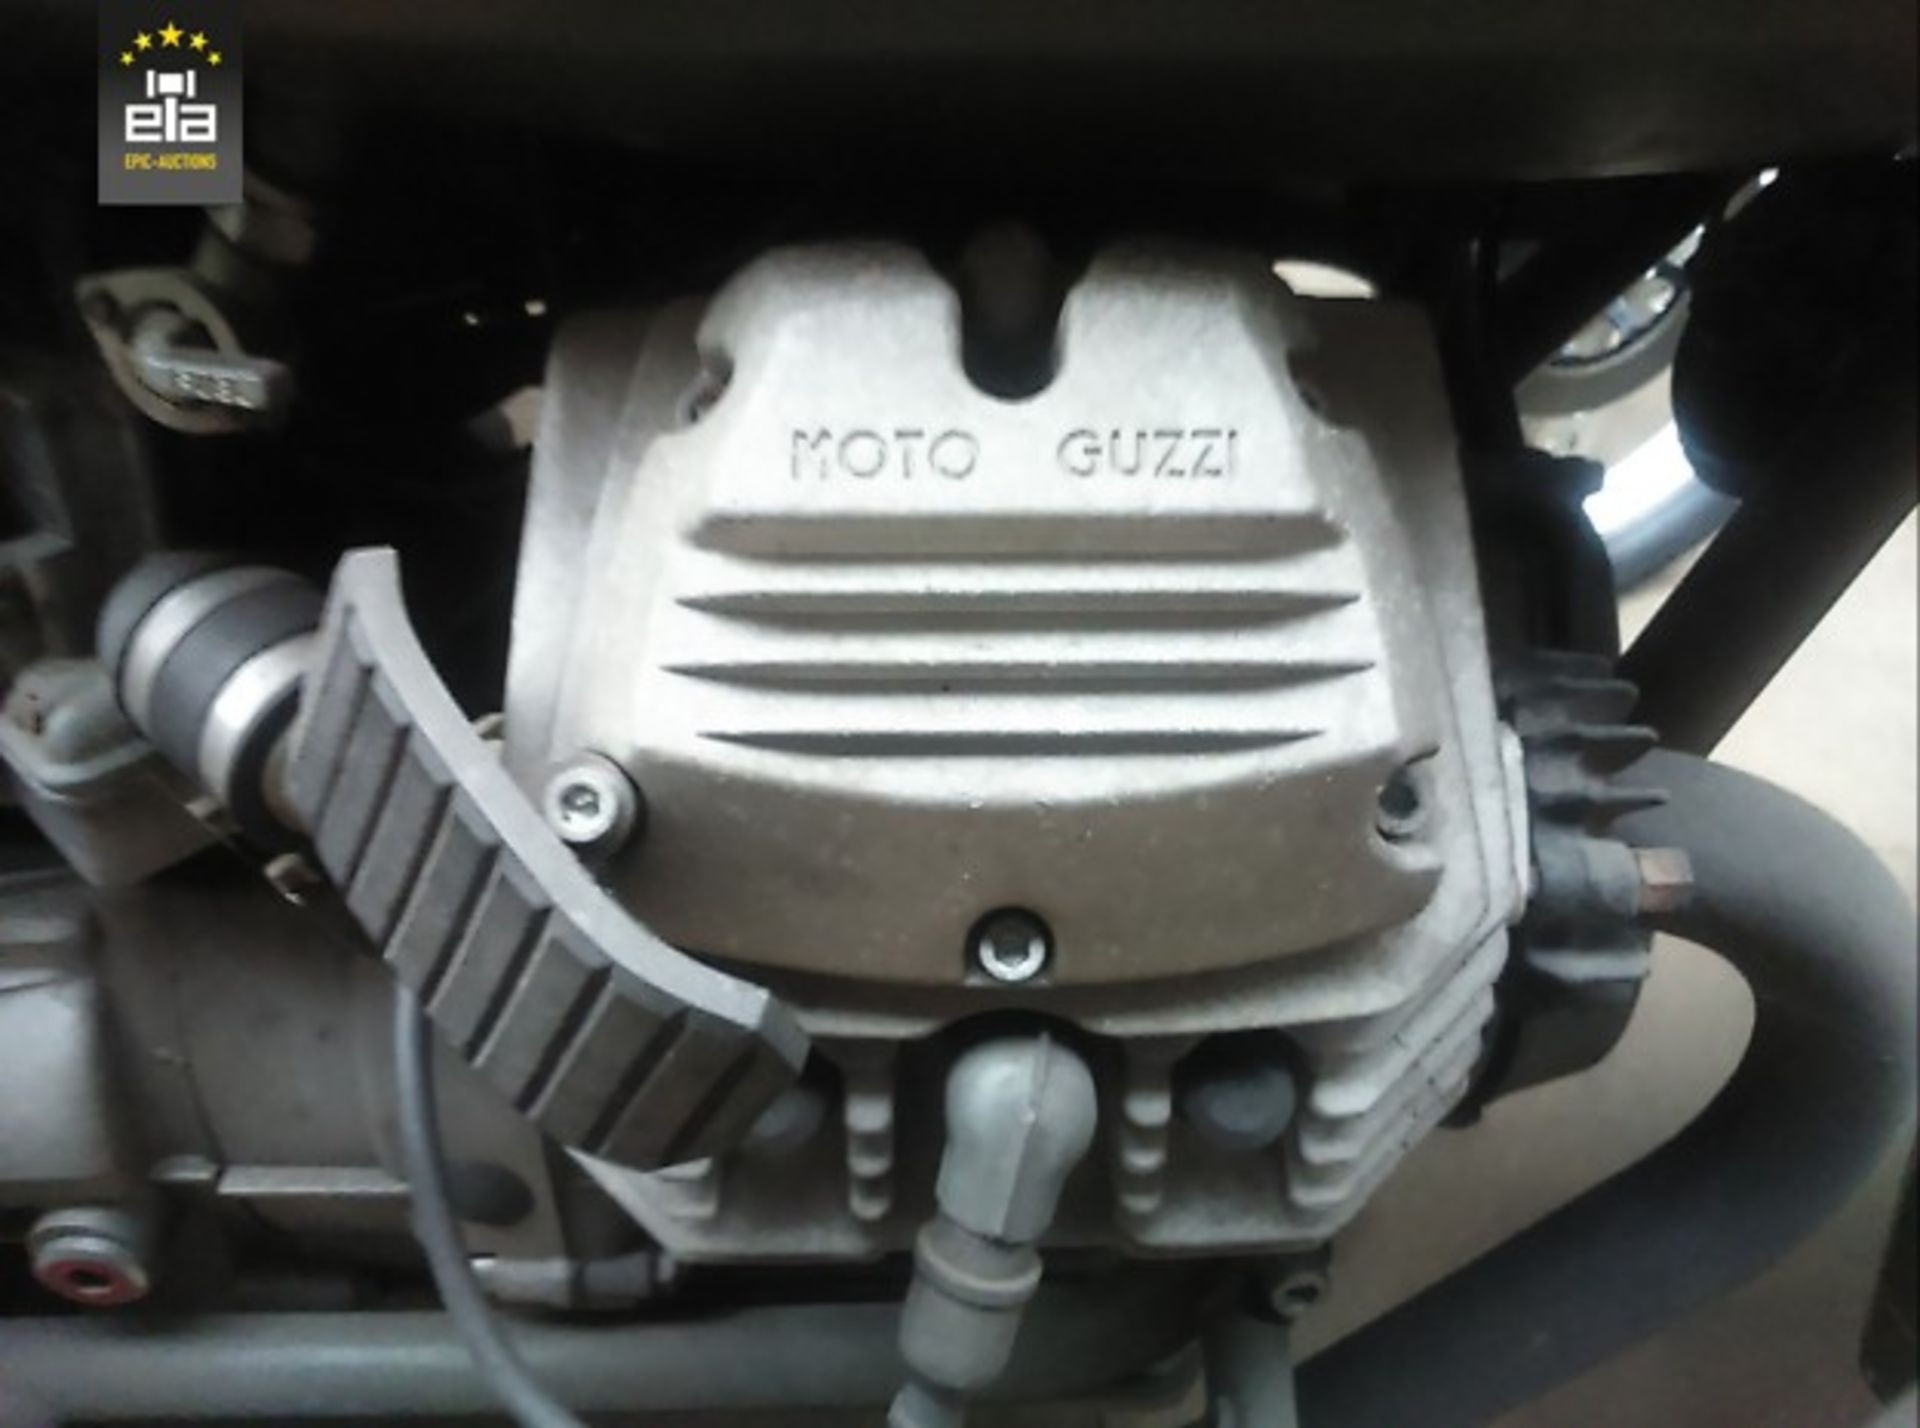 1985 Moto Guzzi 20140534 - Image 7 of 9